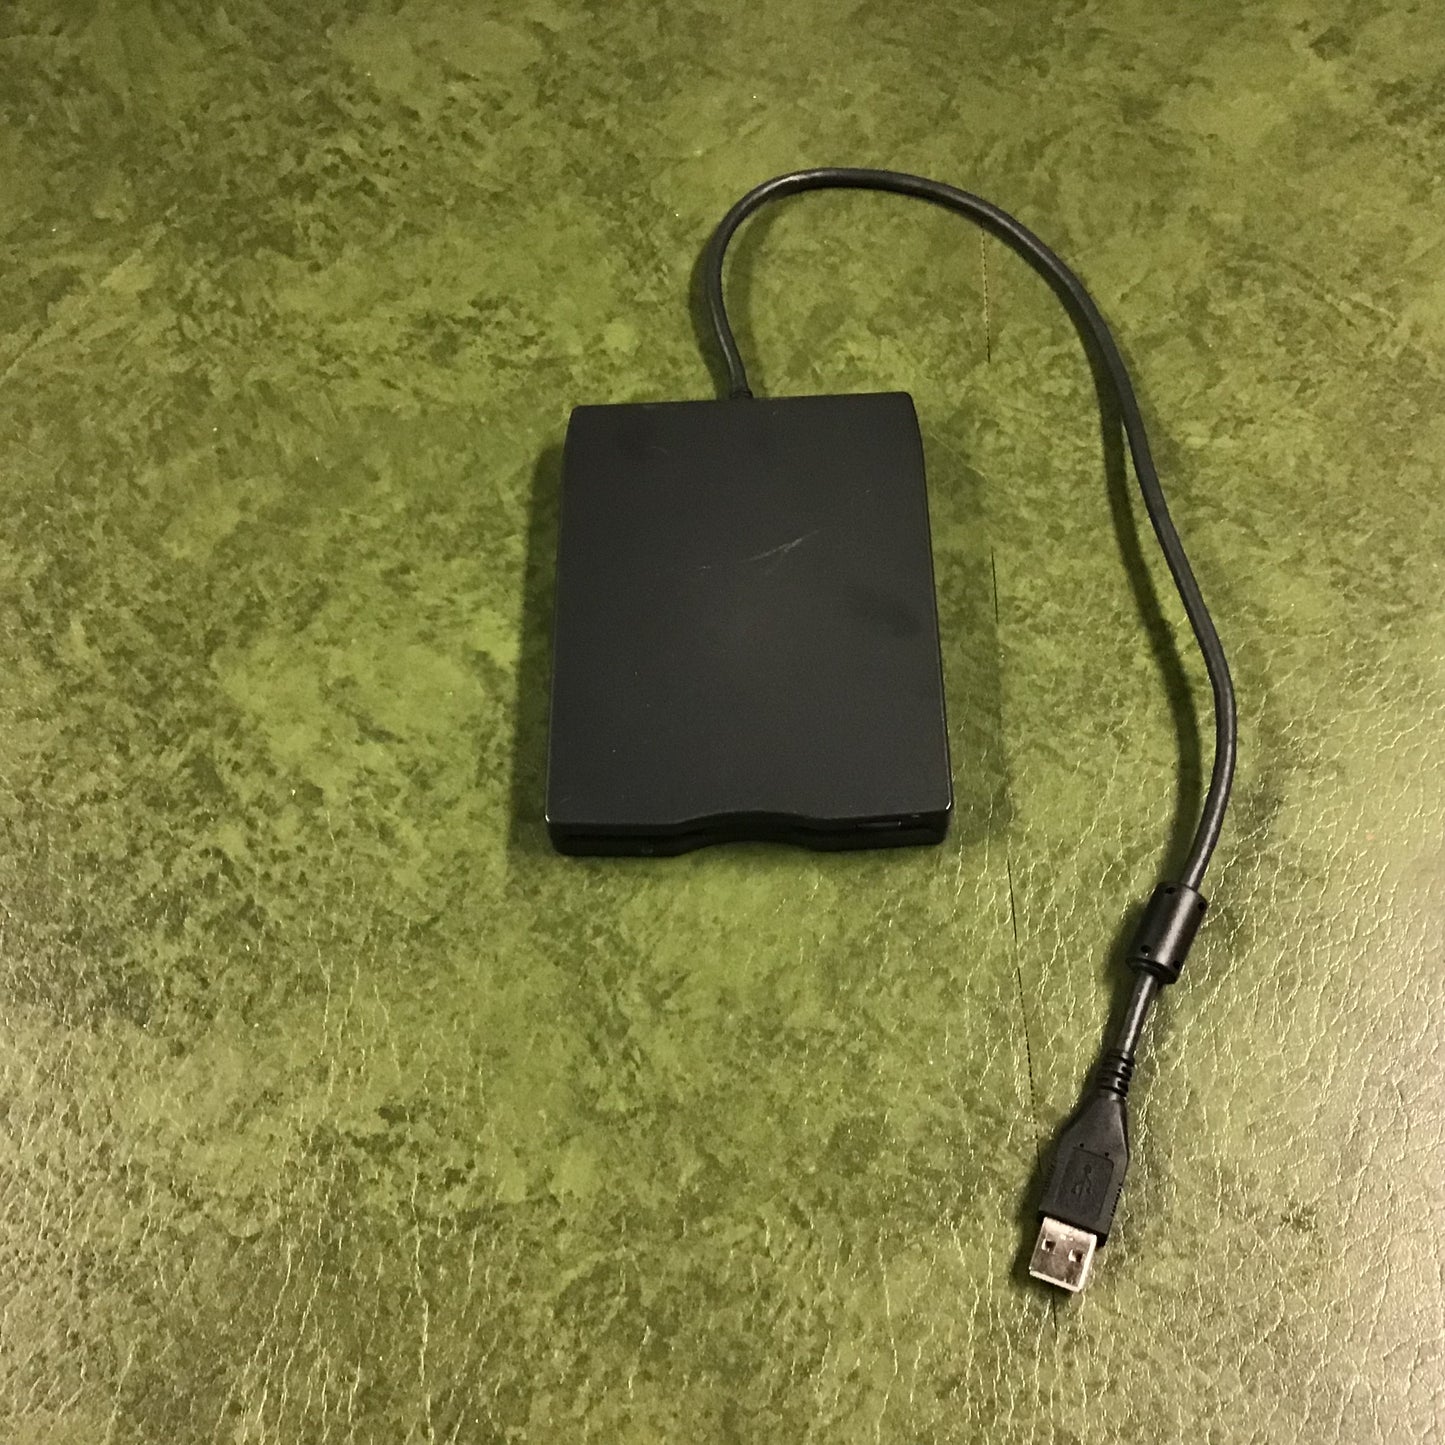 TEAC External USB Floppy Disk Drive Unit